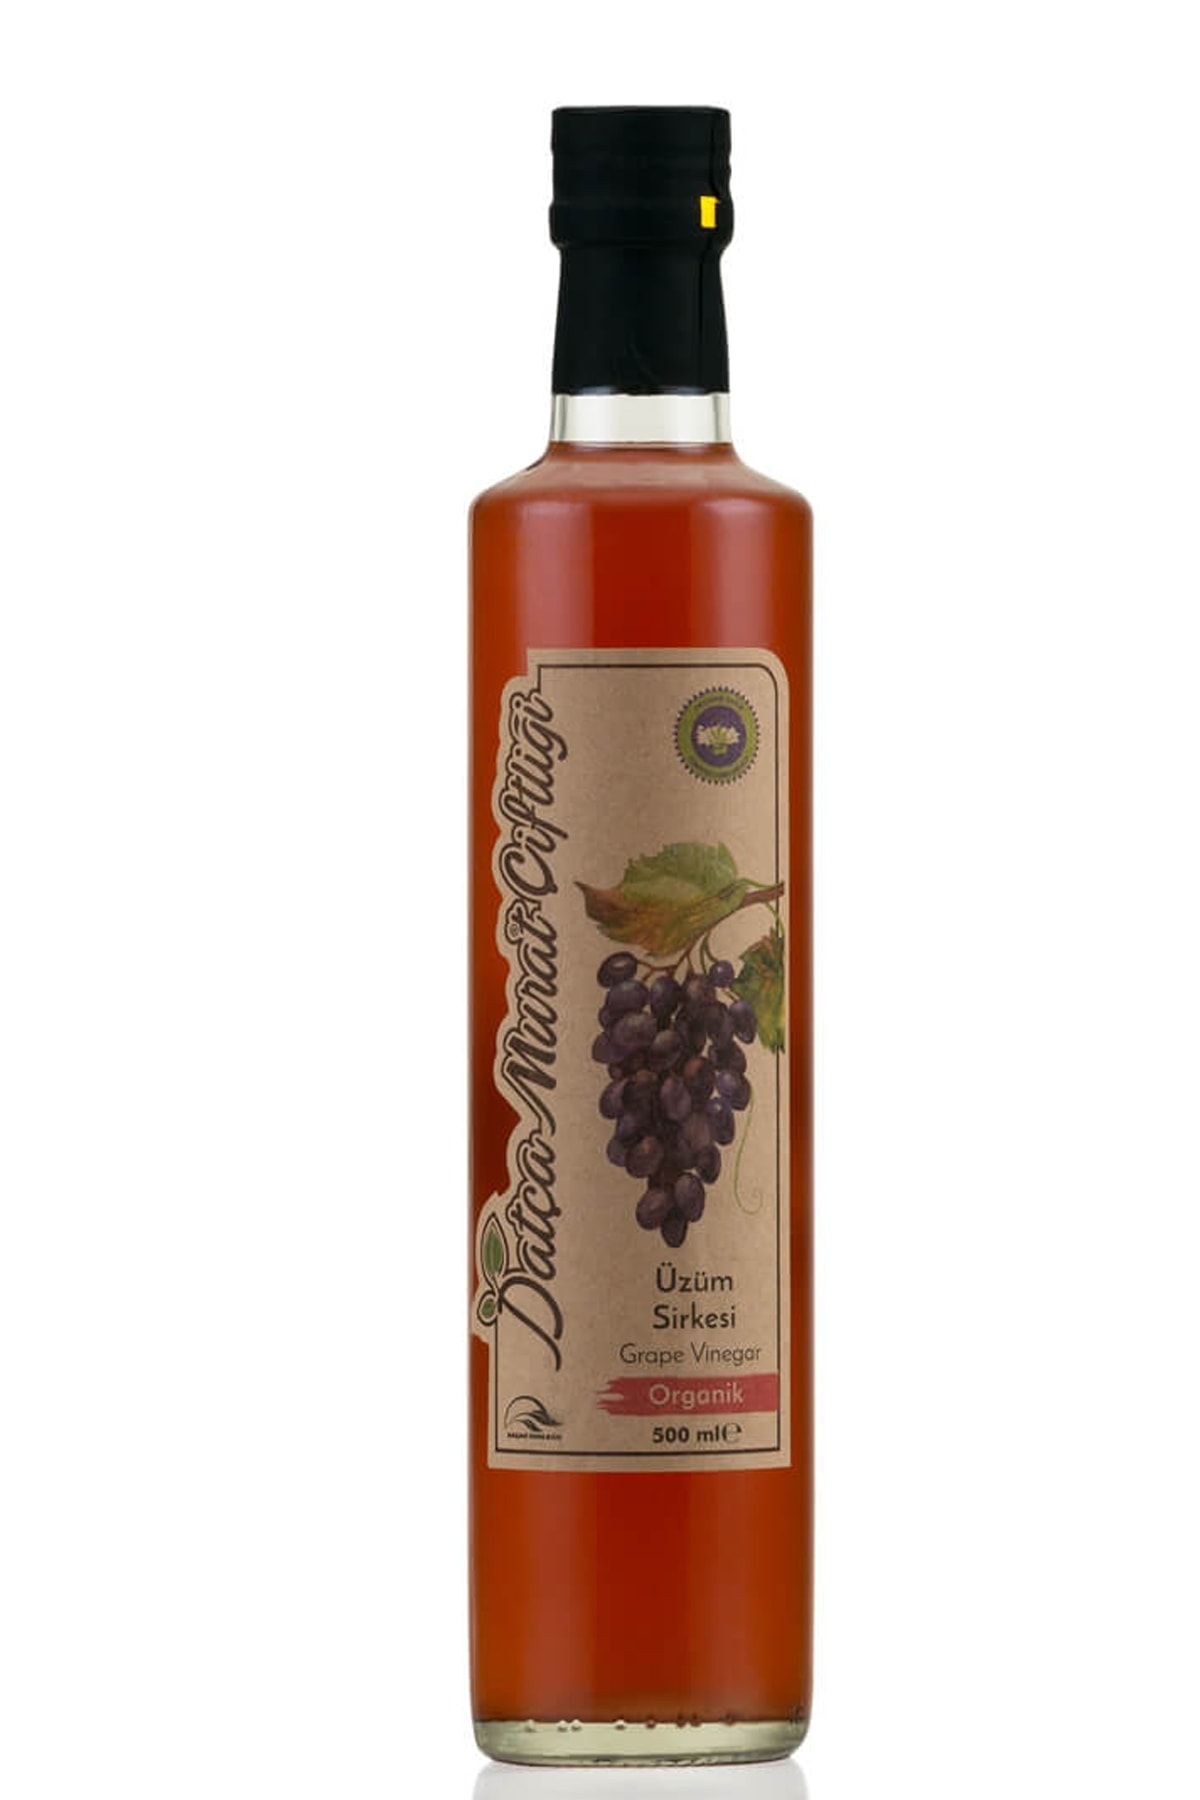 Datça Murat Çiftliği Organik Üzüm Sirkesi 500 ml Grape Vinegar